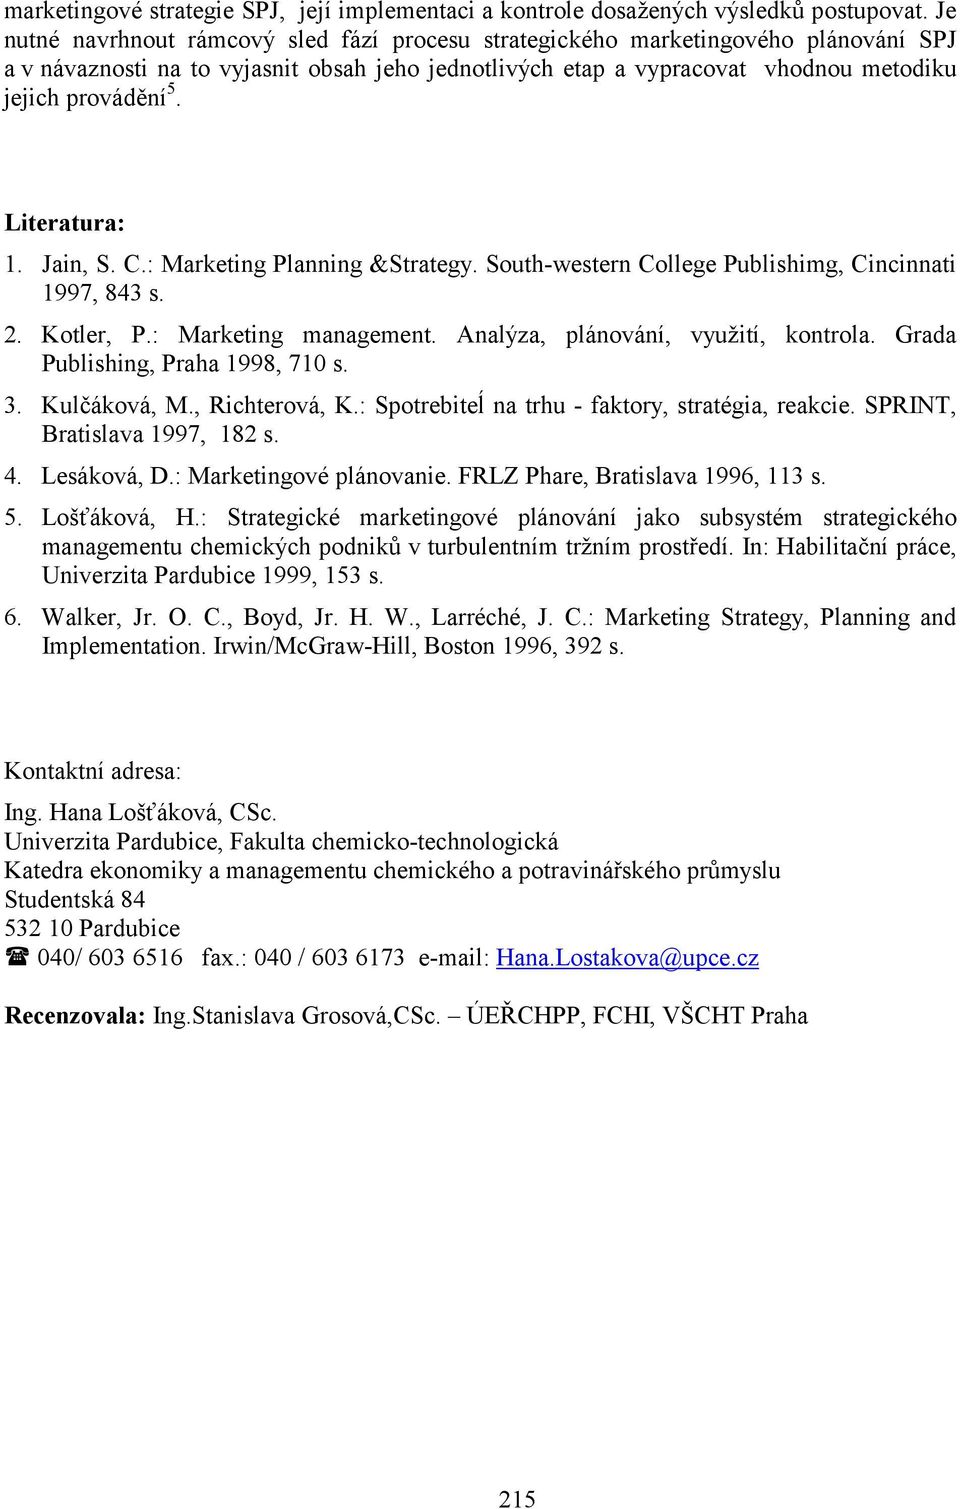 Literatura: 1. Jain, S. C.: Marketing Planning &Strategy. South-western College Publishimg, Cincinnati 1997, 843 s. 2. Kotler, P.: Marketing management. Analýza, plánování, využití, kontrola.